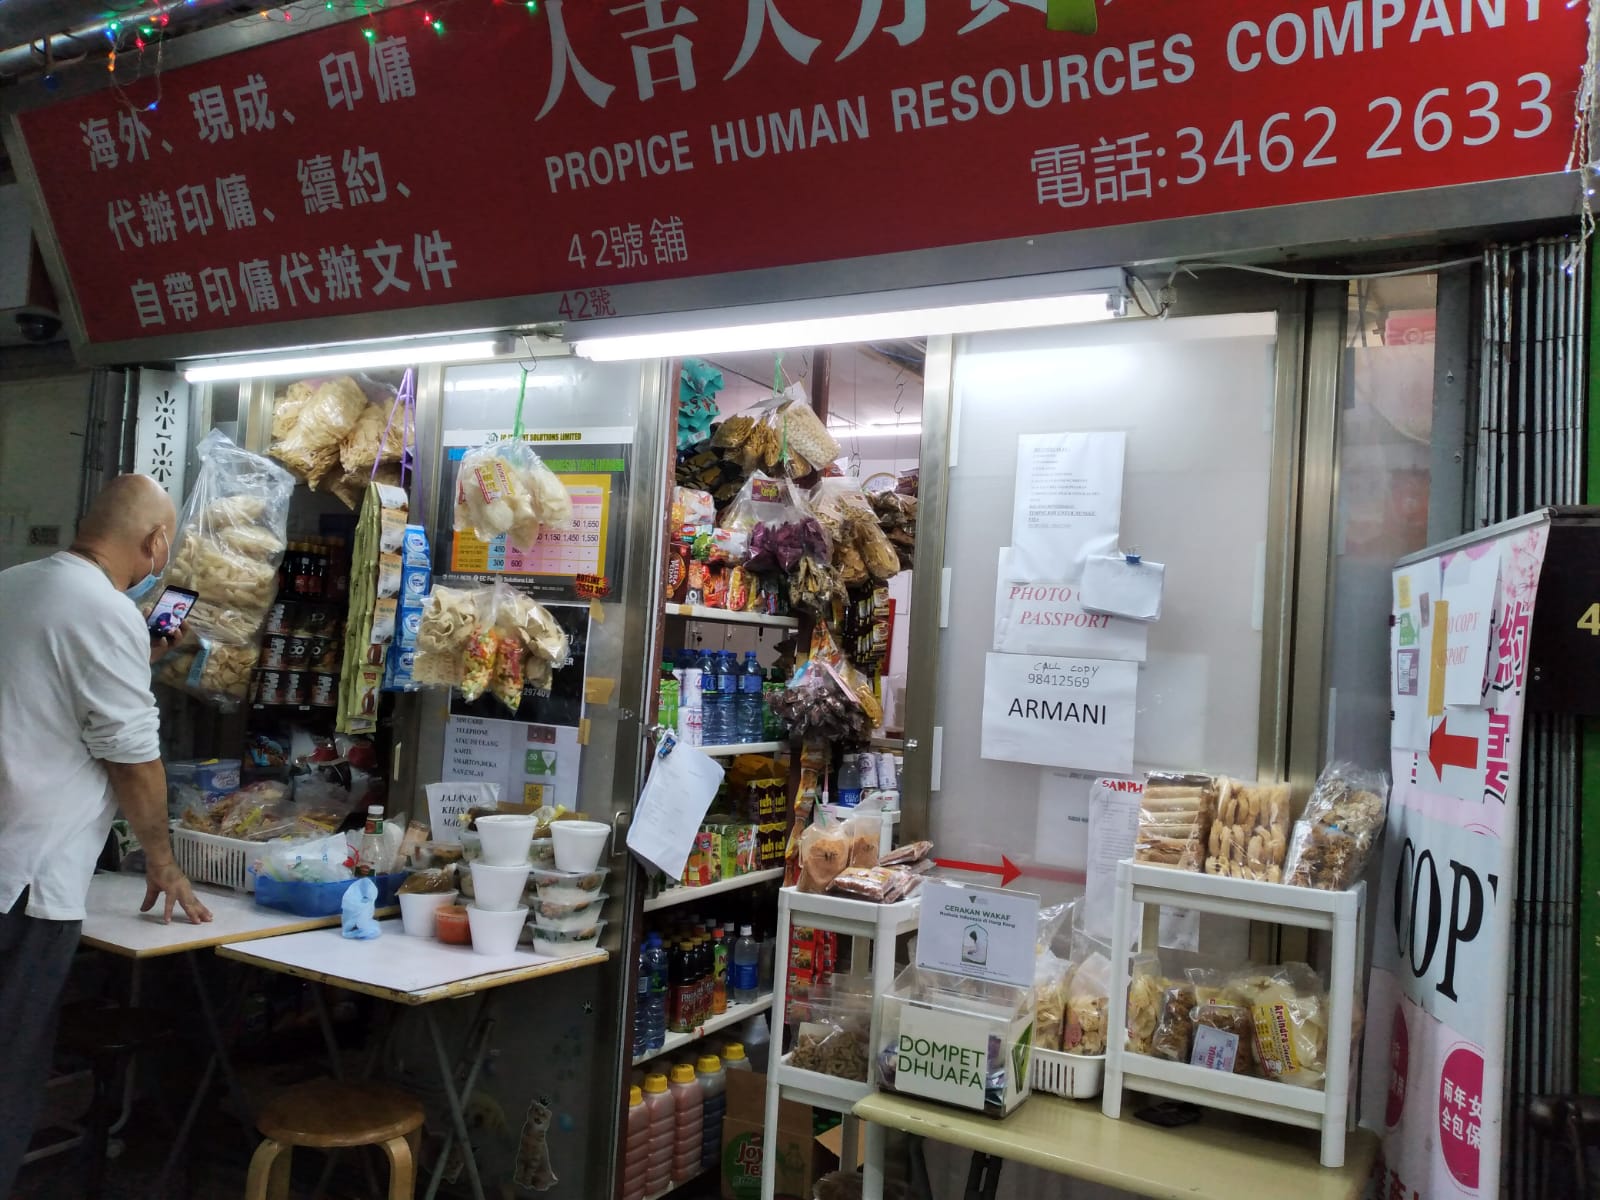 Pada sepertiga Oktober 2020, uang infak di kotak donasi yang dititipkan di toko fotokopi Propice Human Resources Company milik Madam Armany Tsoi di Causeway Bay berjumlah HK$1660.5